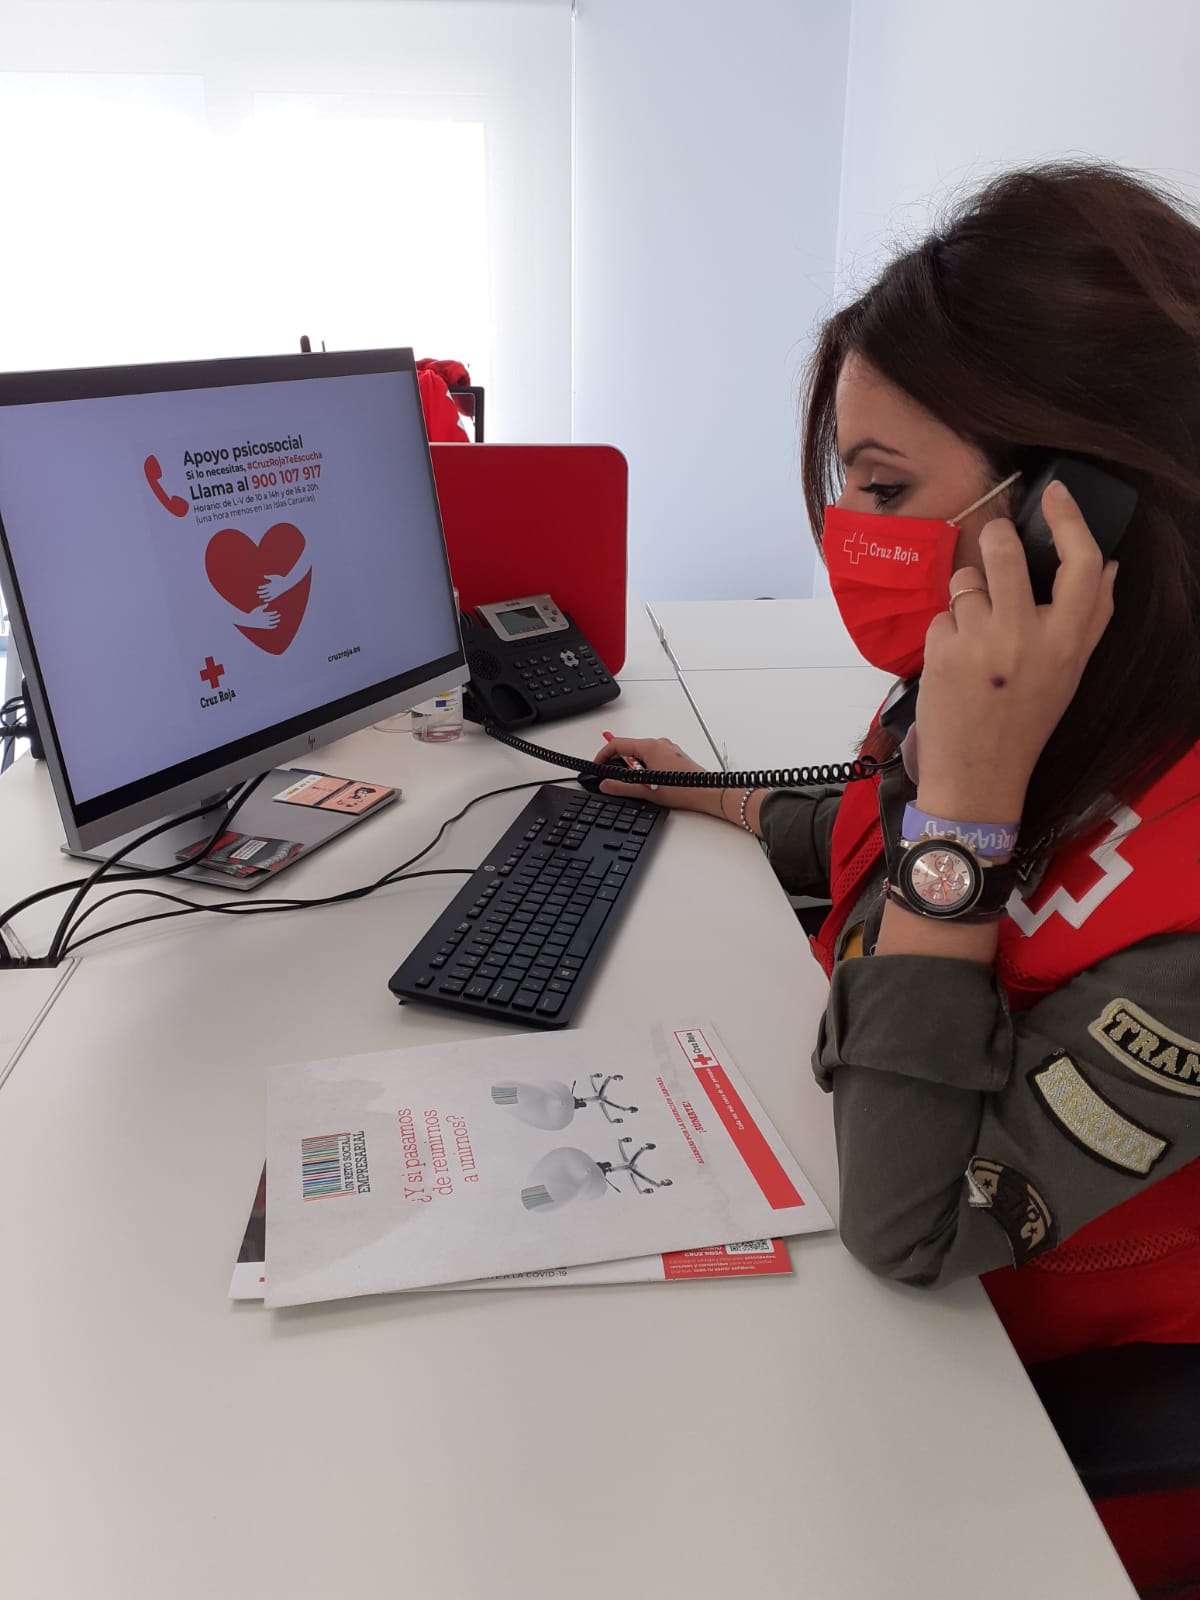 Cruz Roja Te Escucha colabora en el lanzamiento de Sperantia